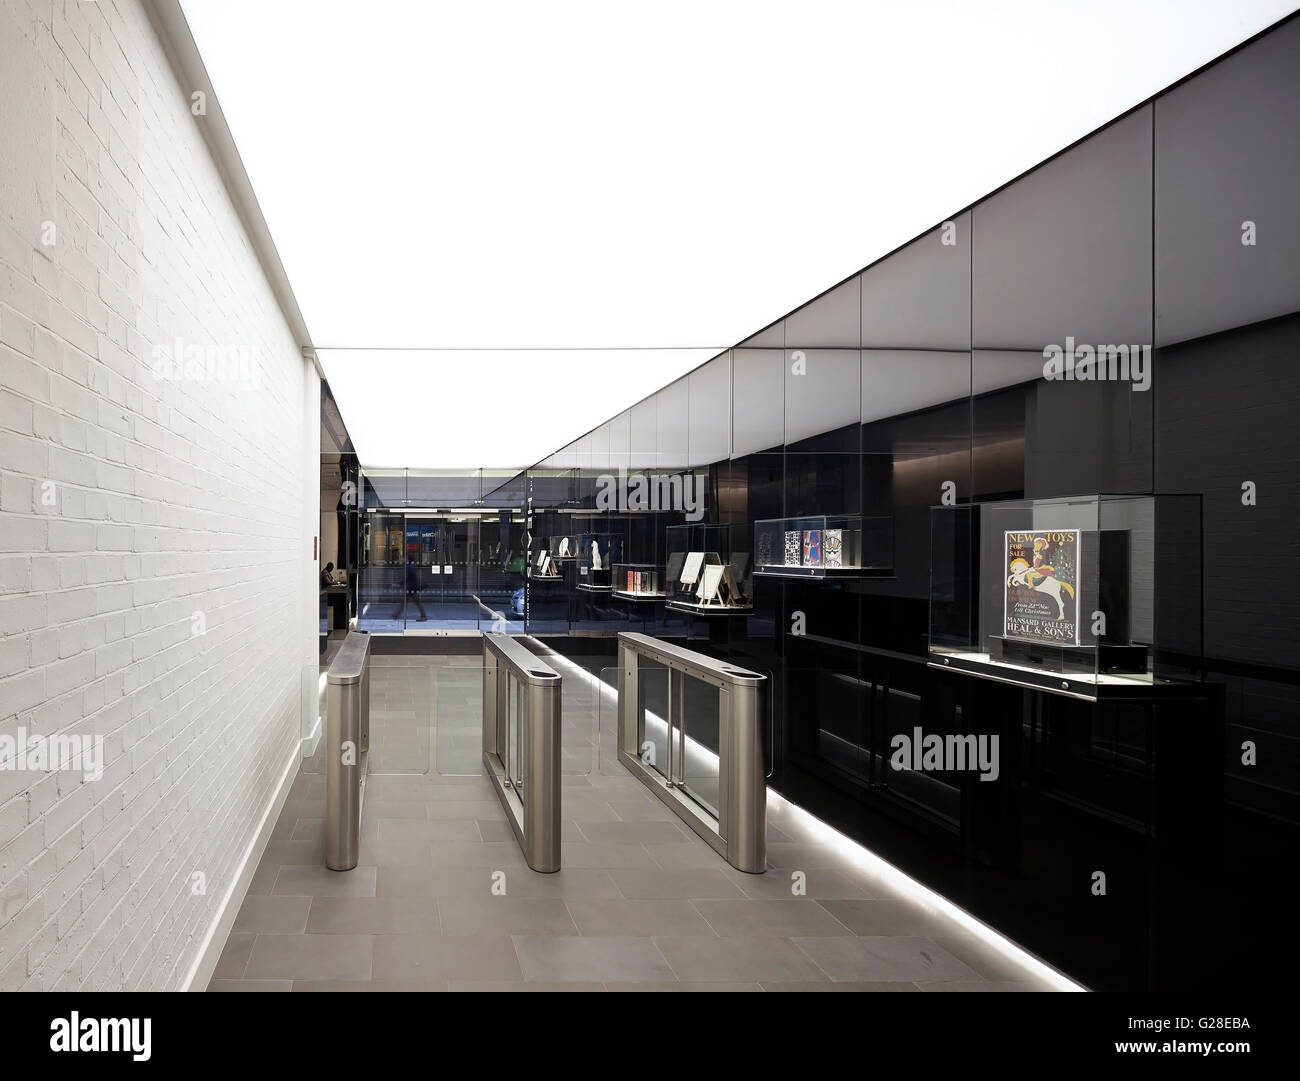 Ingresso corridoio con il bianco muro di mattoni e black polished carenatura. Guarire, Torrington Place, Londra, Regno Unito. Architetto: John McAslan & Partners, 2014. Foto Stock